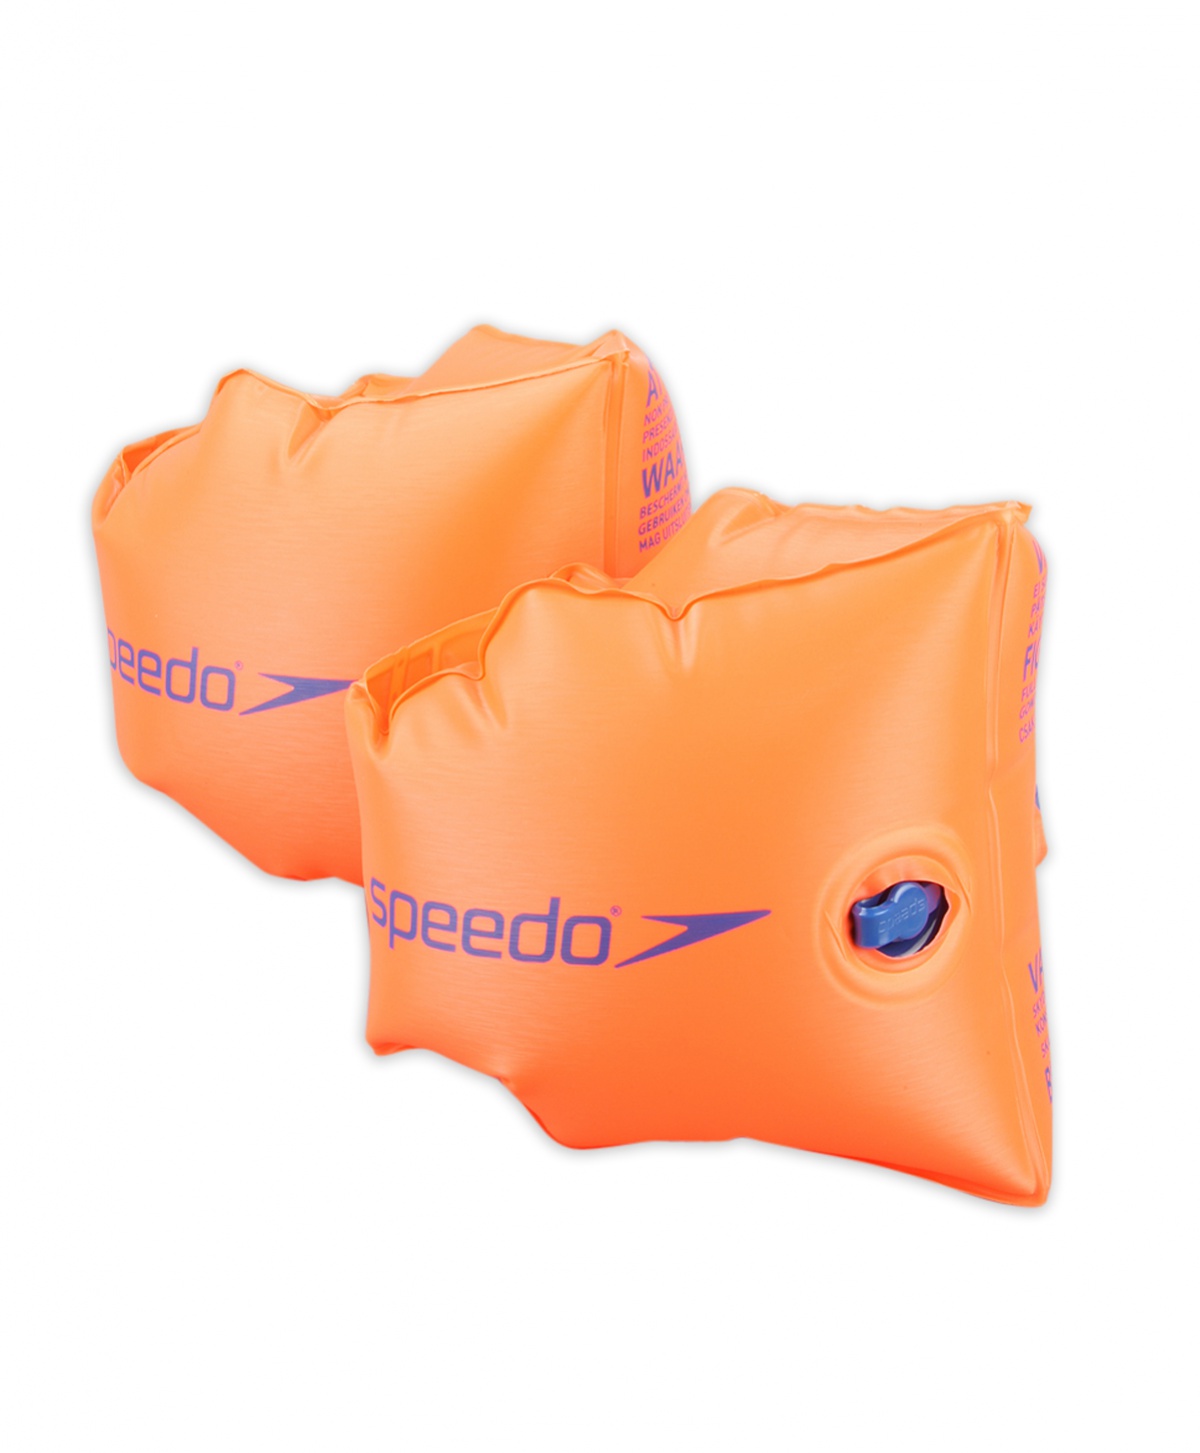 Dětské rukávky Speedo Armbands Orange 0-2 + prodejny Praha, Brno, Plzeň a Ostrava výměna a vrácení do 30 dnů s poštovným zdarma